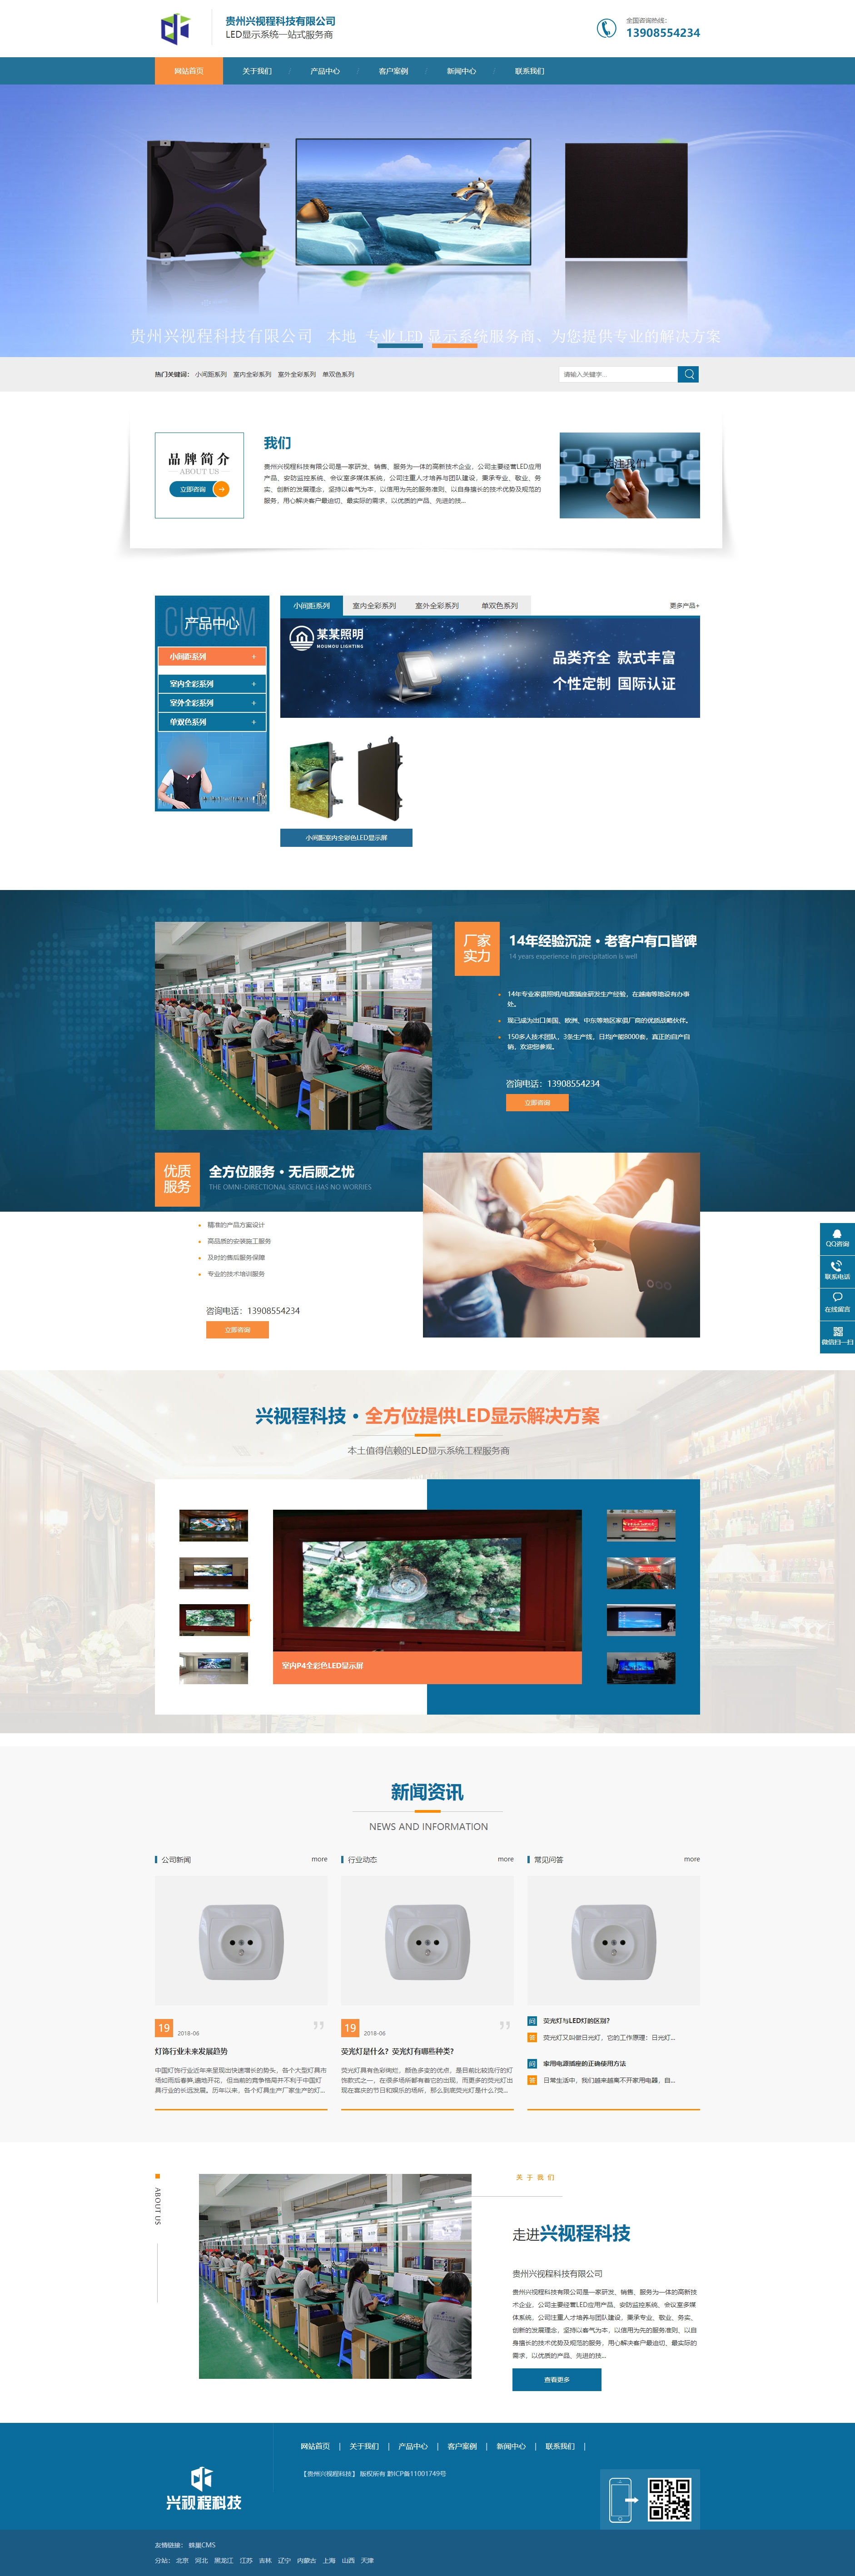 册亨贵州兴视程科技有限公司 网站正式上线